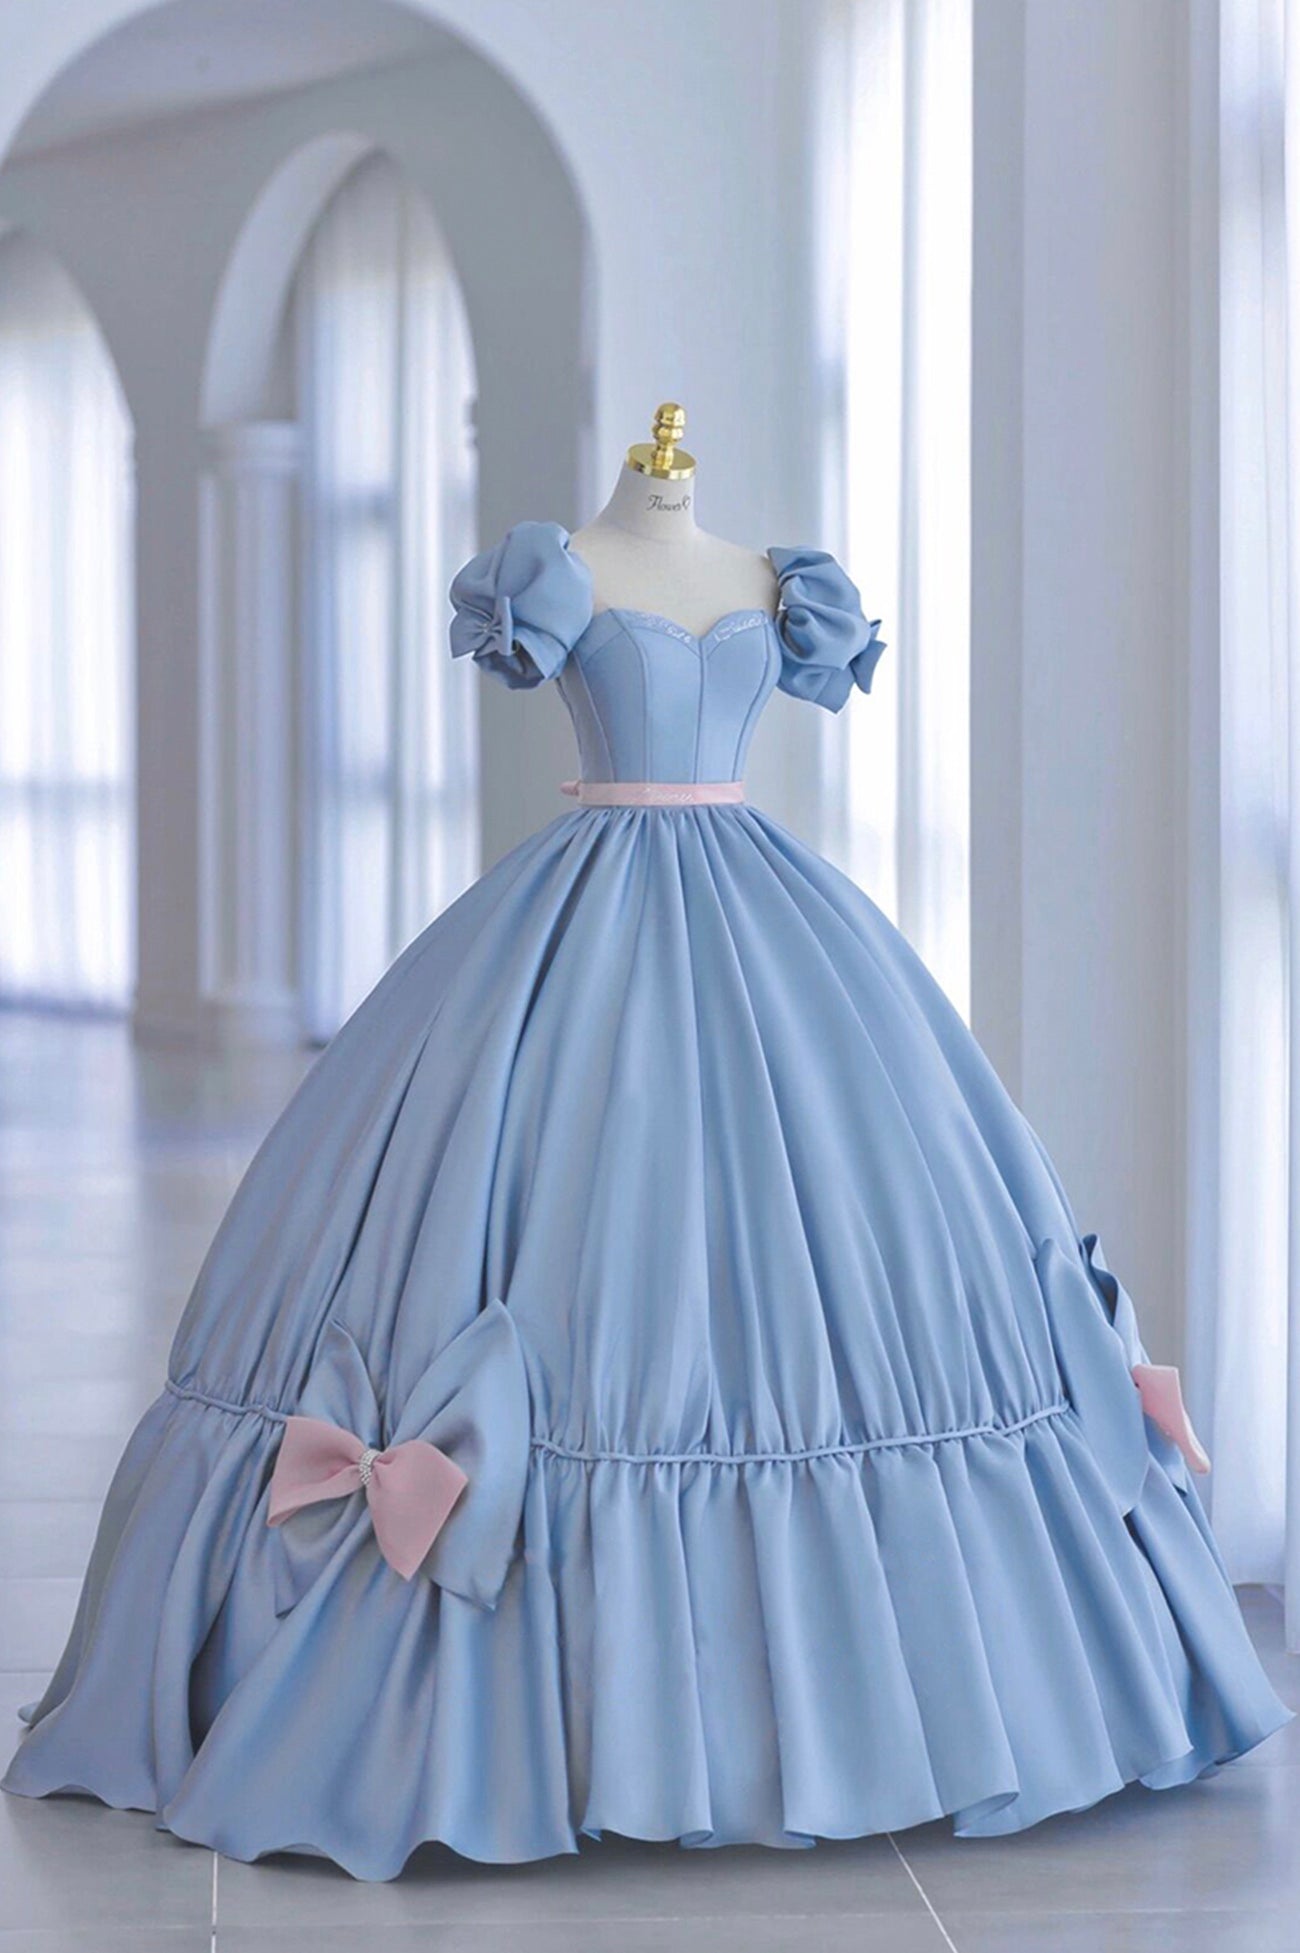 Homecoming Dress Shops Near Me, Blue Satin Long Princess Dress, Cute Short Sleeve Ball Gown Sweet 16 Dress